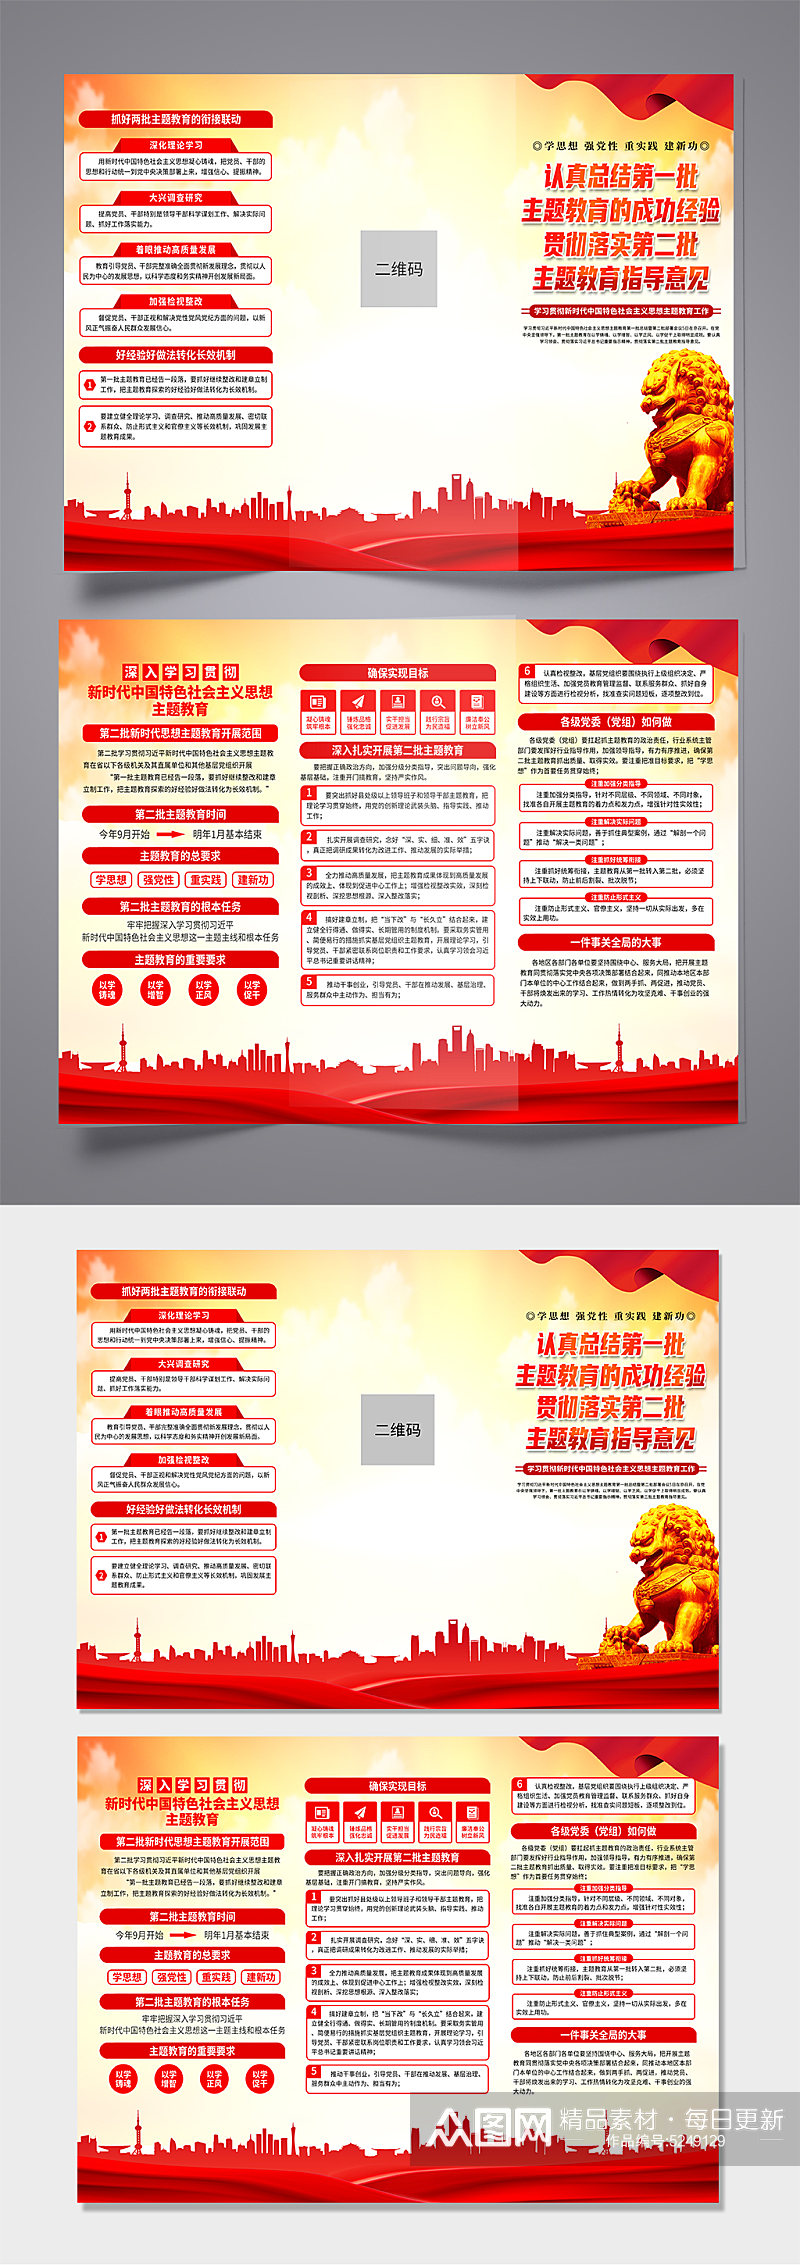 第二批中国特色社会主义思想主题教育折页素材